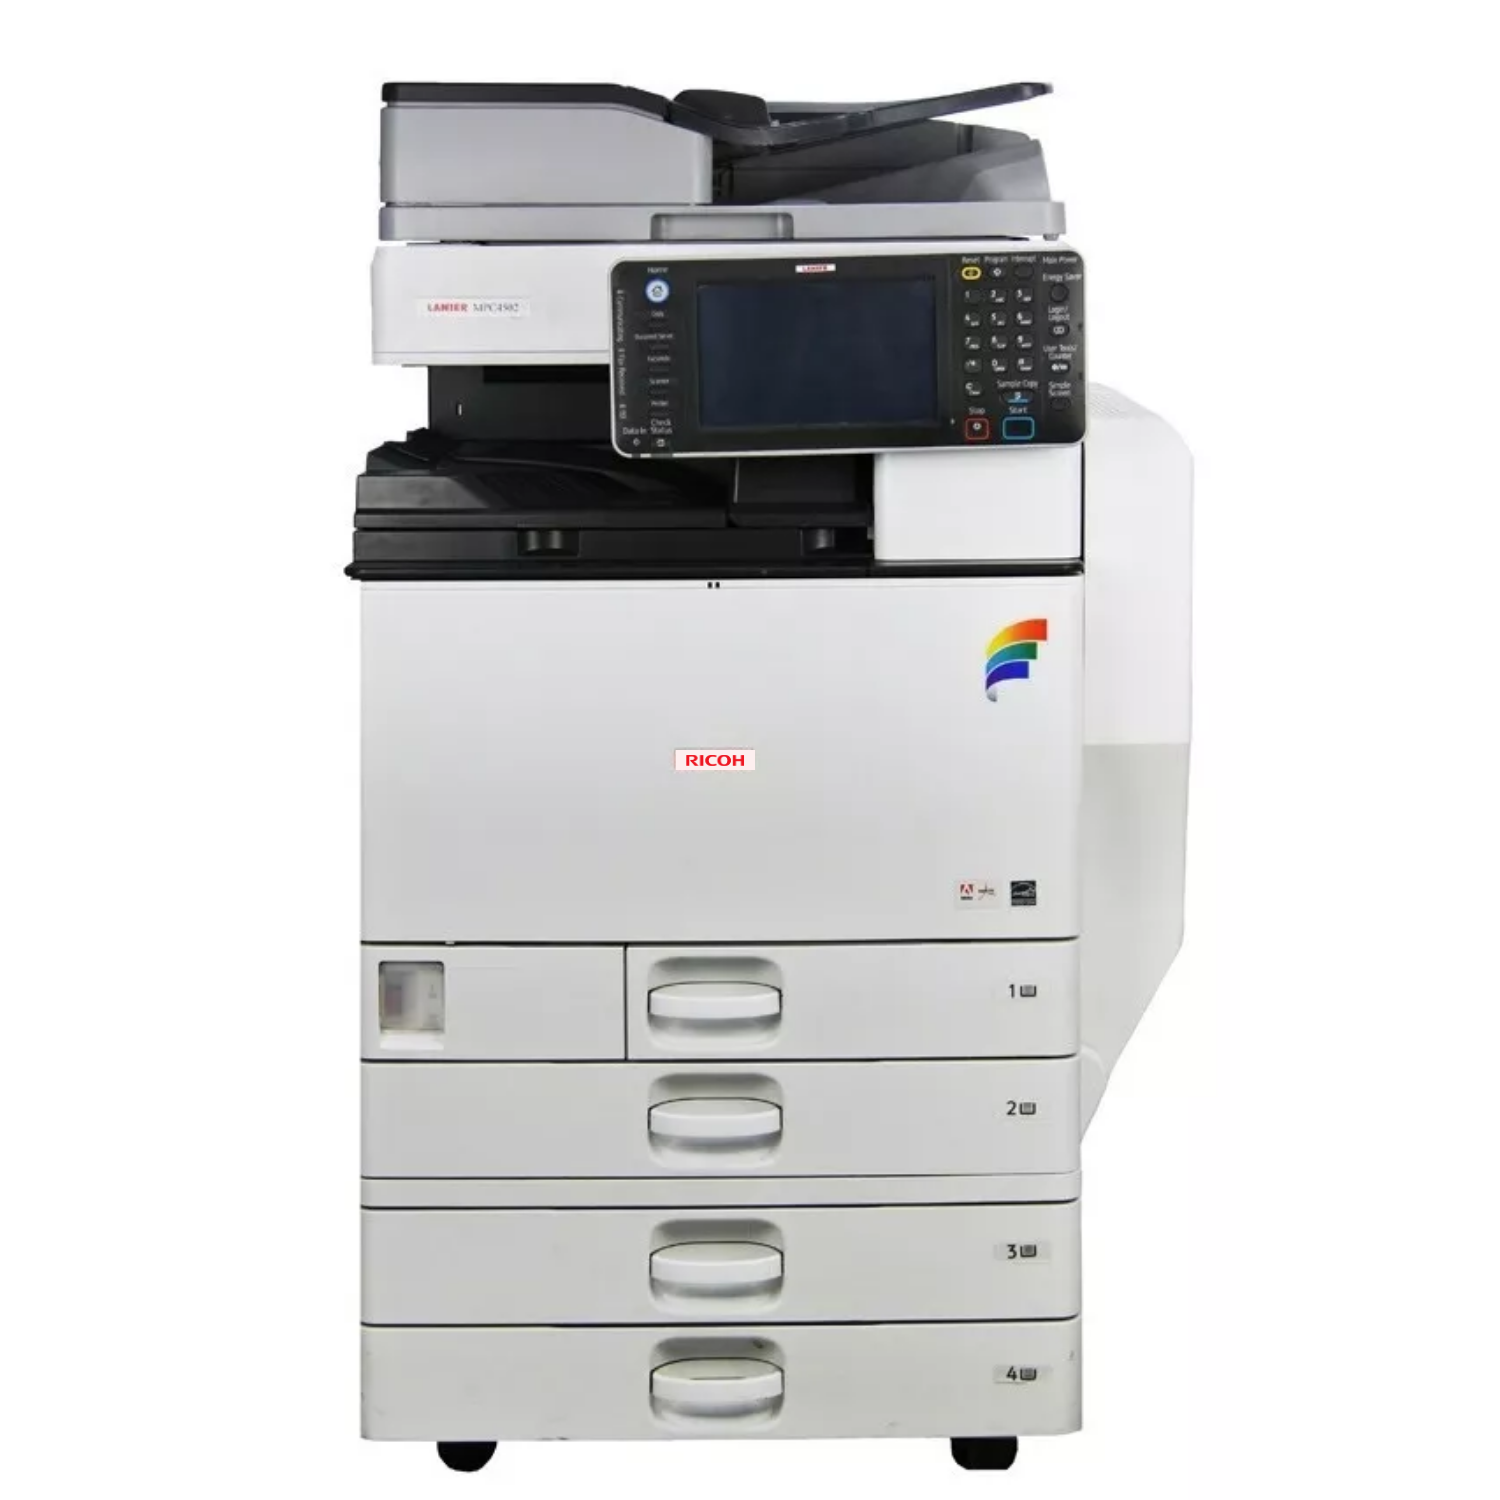 Impresora Multifunción Láser Color Ricoh M C251fw Wifi C